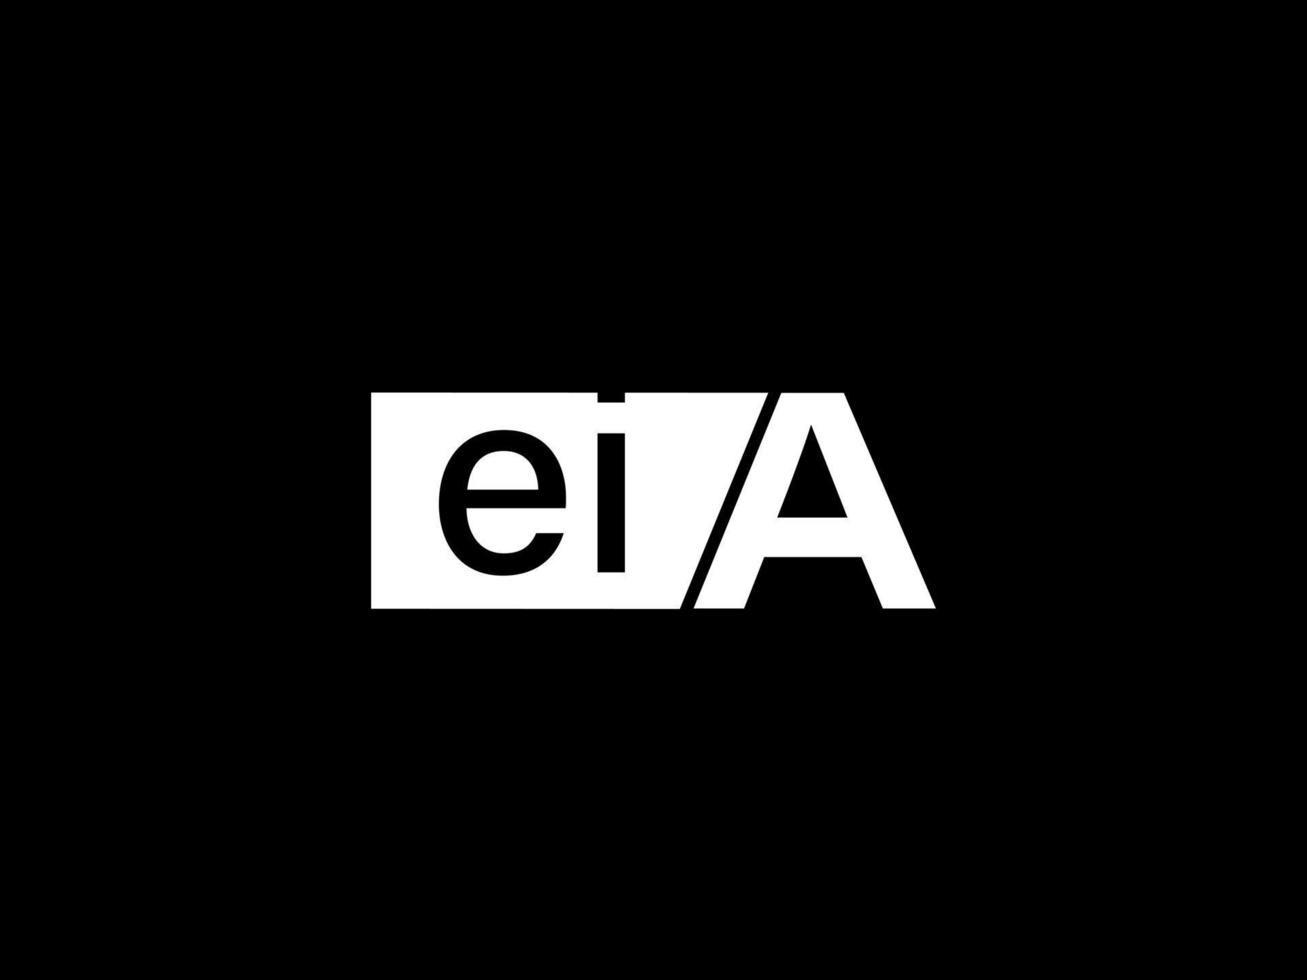 eia-Logo und Grafikdesign Vektorgrafiken, Symbole isoliert auf schwarzem Hintergrund vektor